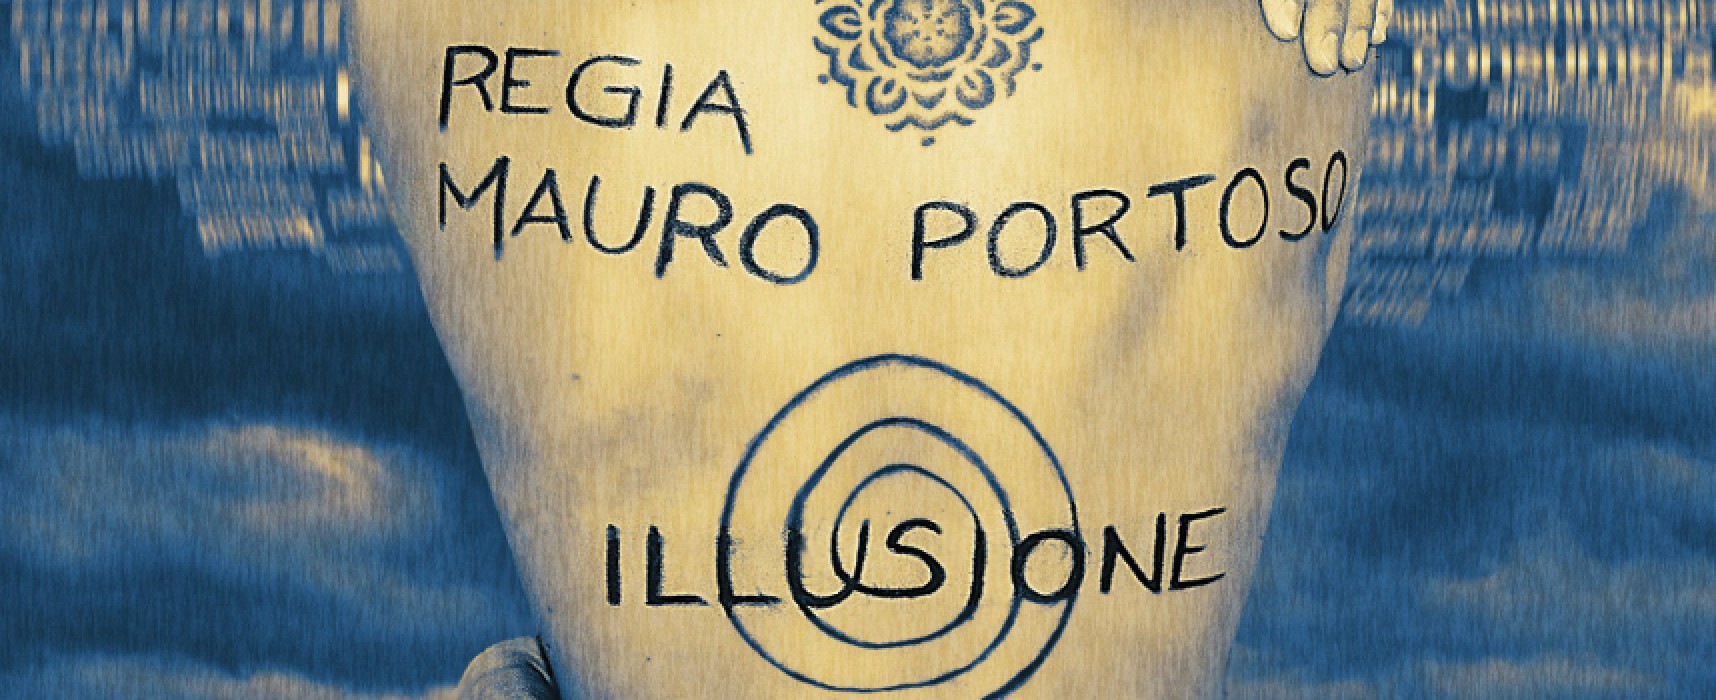 Il regista Mauro Portoso presenta il suo nuovo cortometraggio “Illusione”